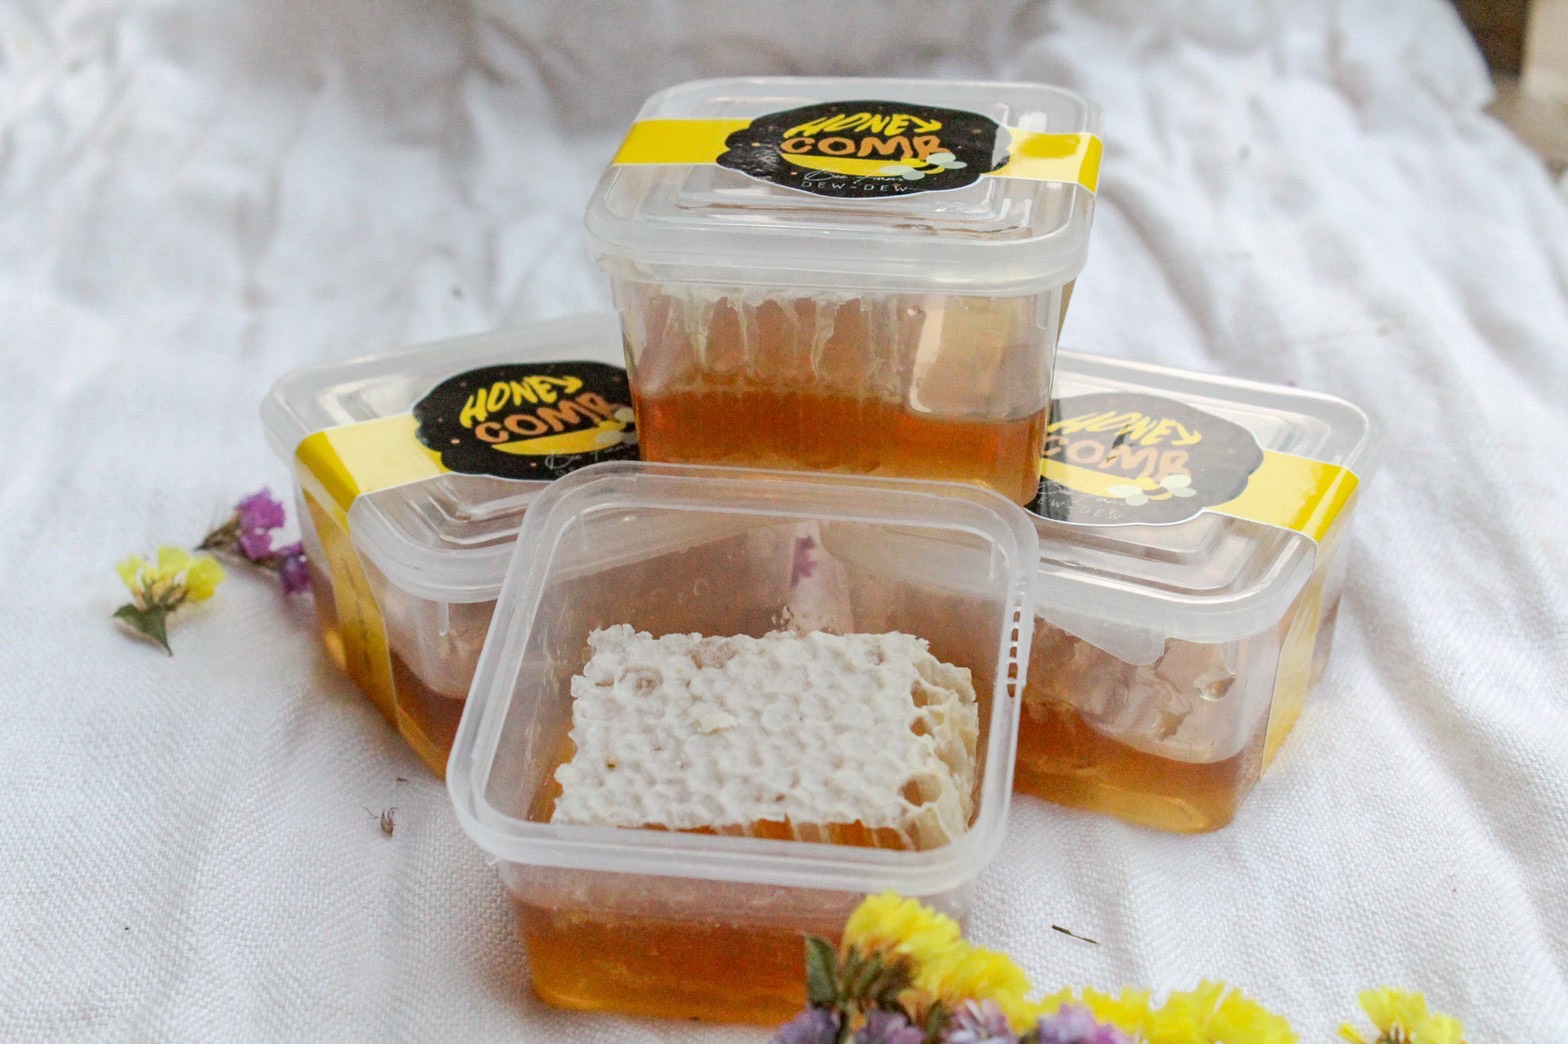 รวงน้ำผึ้ง Honeycomb ขนาด 79 กรัม - ฟาร์มผึ้งดิ่วดิ๊ว - จำหน่ายน้ำผึ้งแท้ รวงผึ้งแท้ 100%